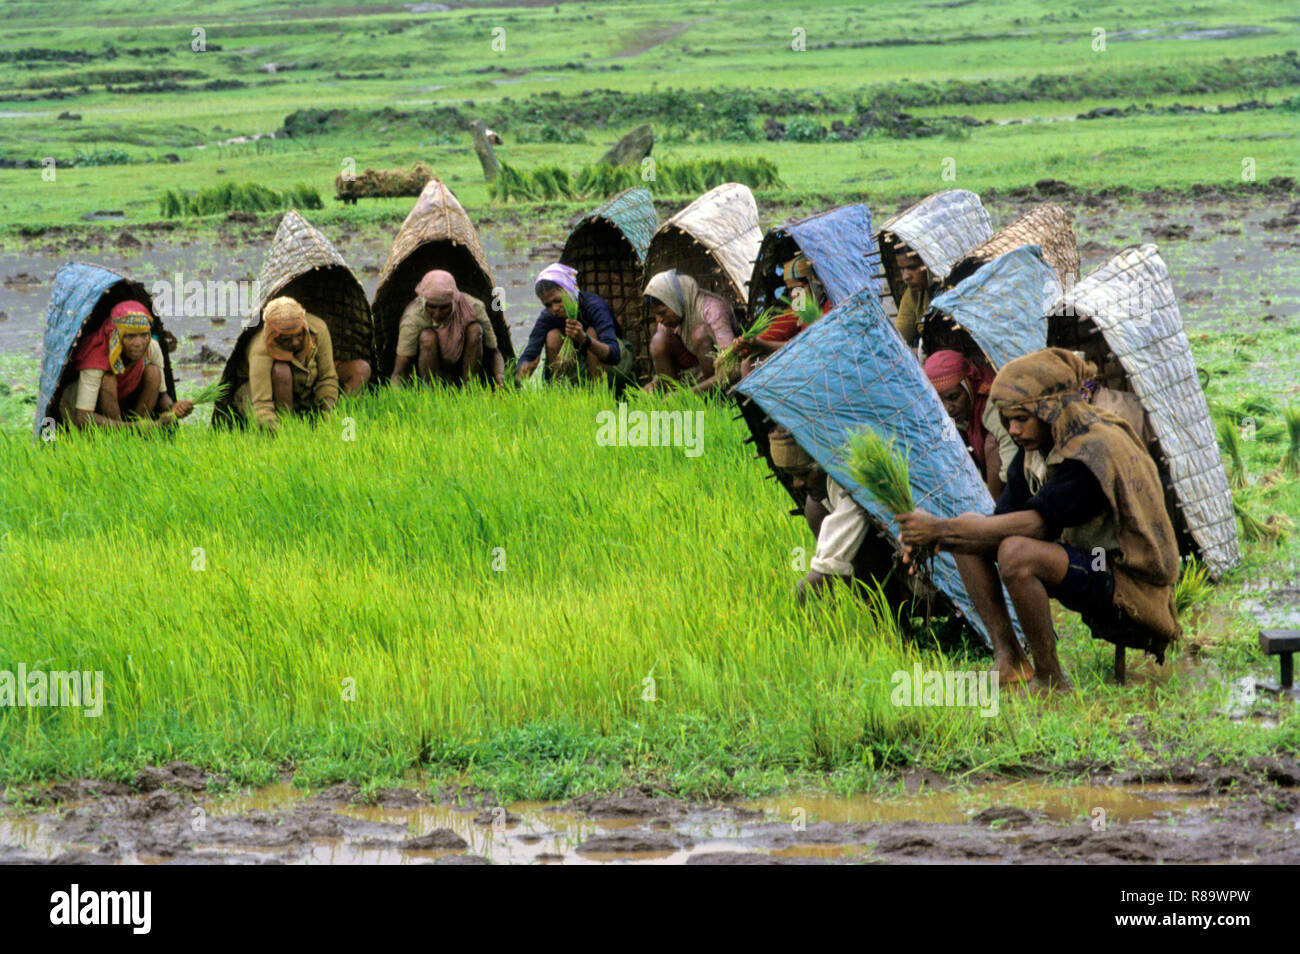 Farmers working in paddy field, maharashtra, india Stock Photo